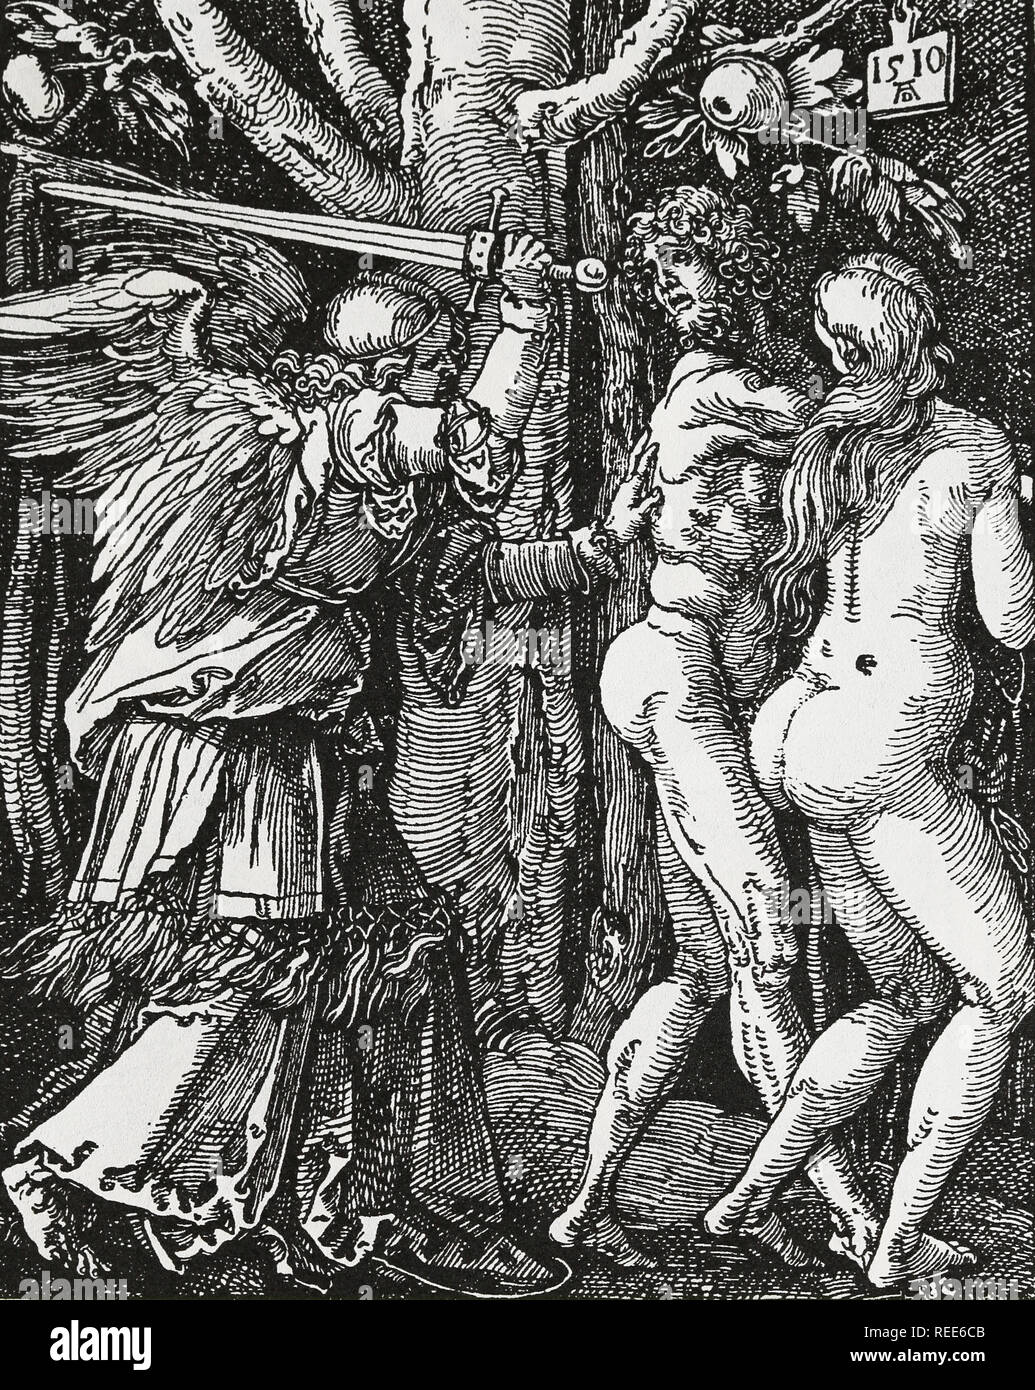 Adam und Eva aus Eden, 1510. Von Albrecht Dürer, Blatt 1 der Reihe "Die kleine Leidenschaft'. Stockfoto